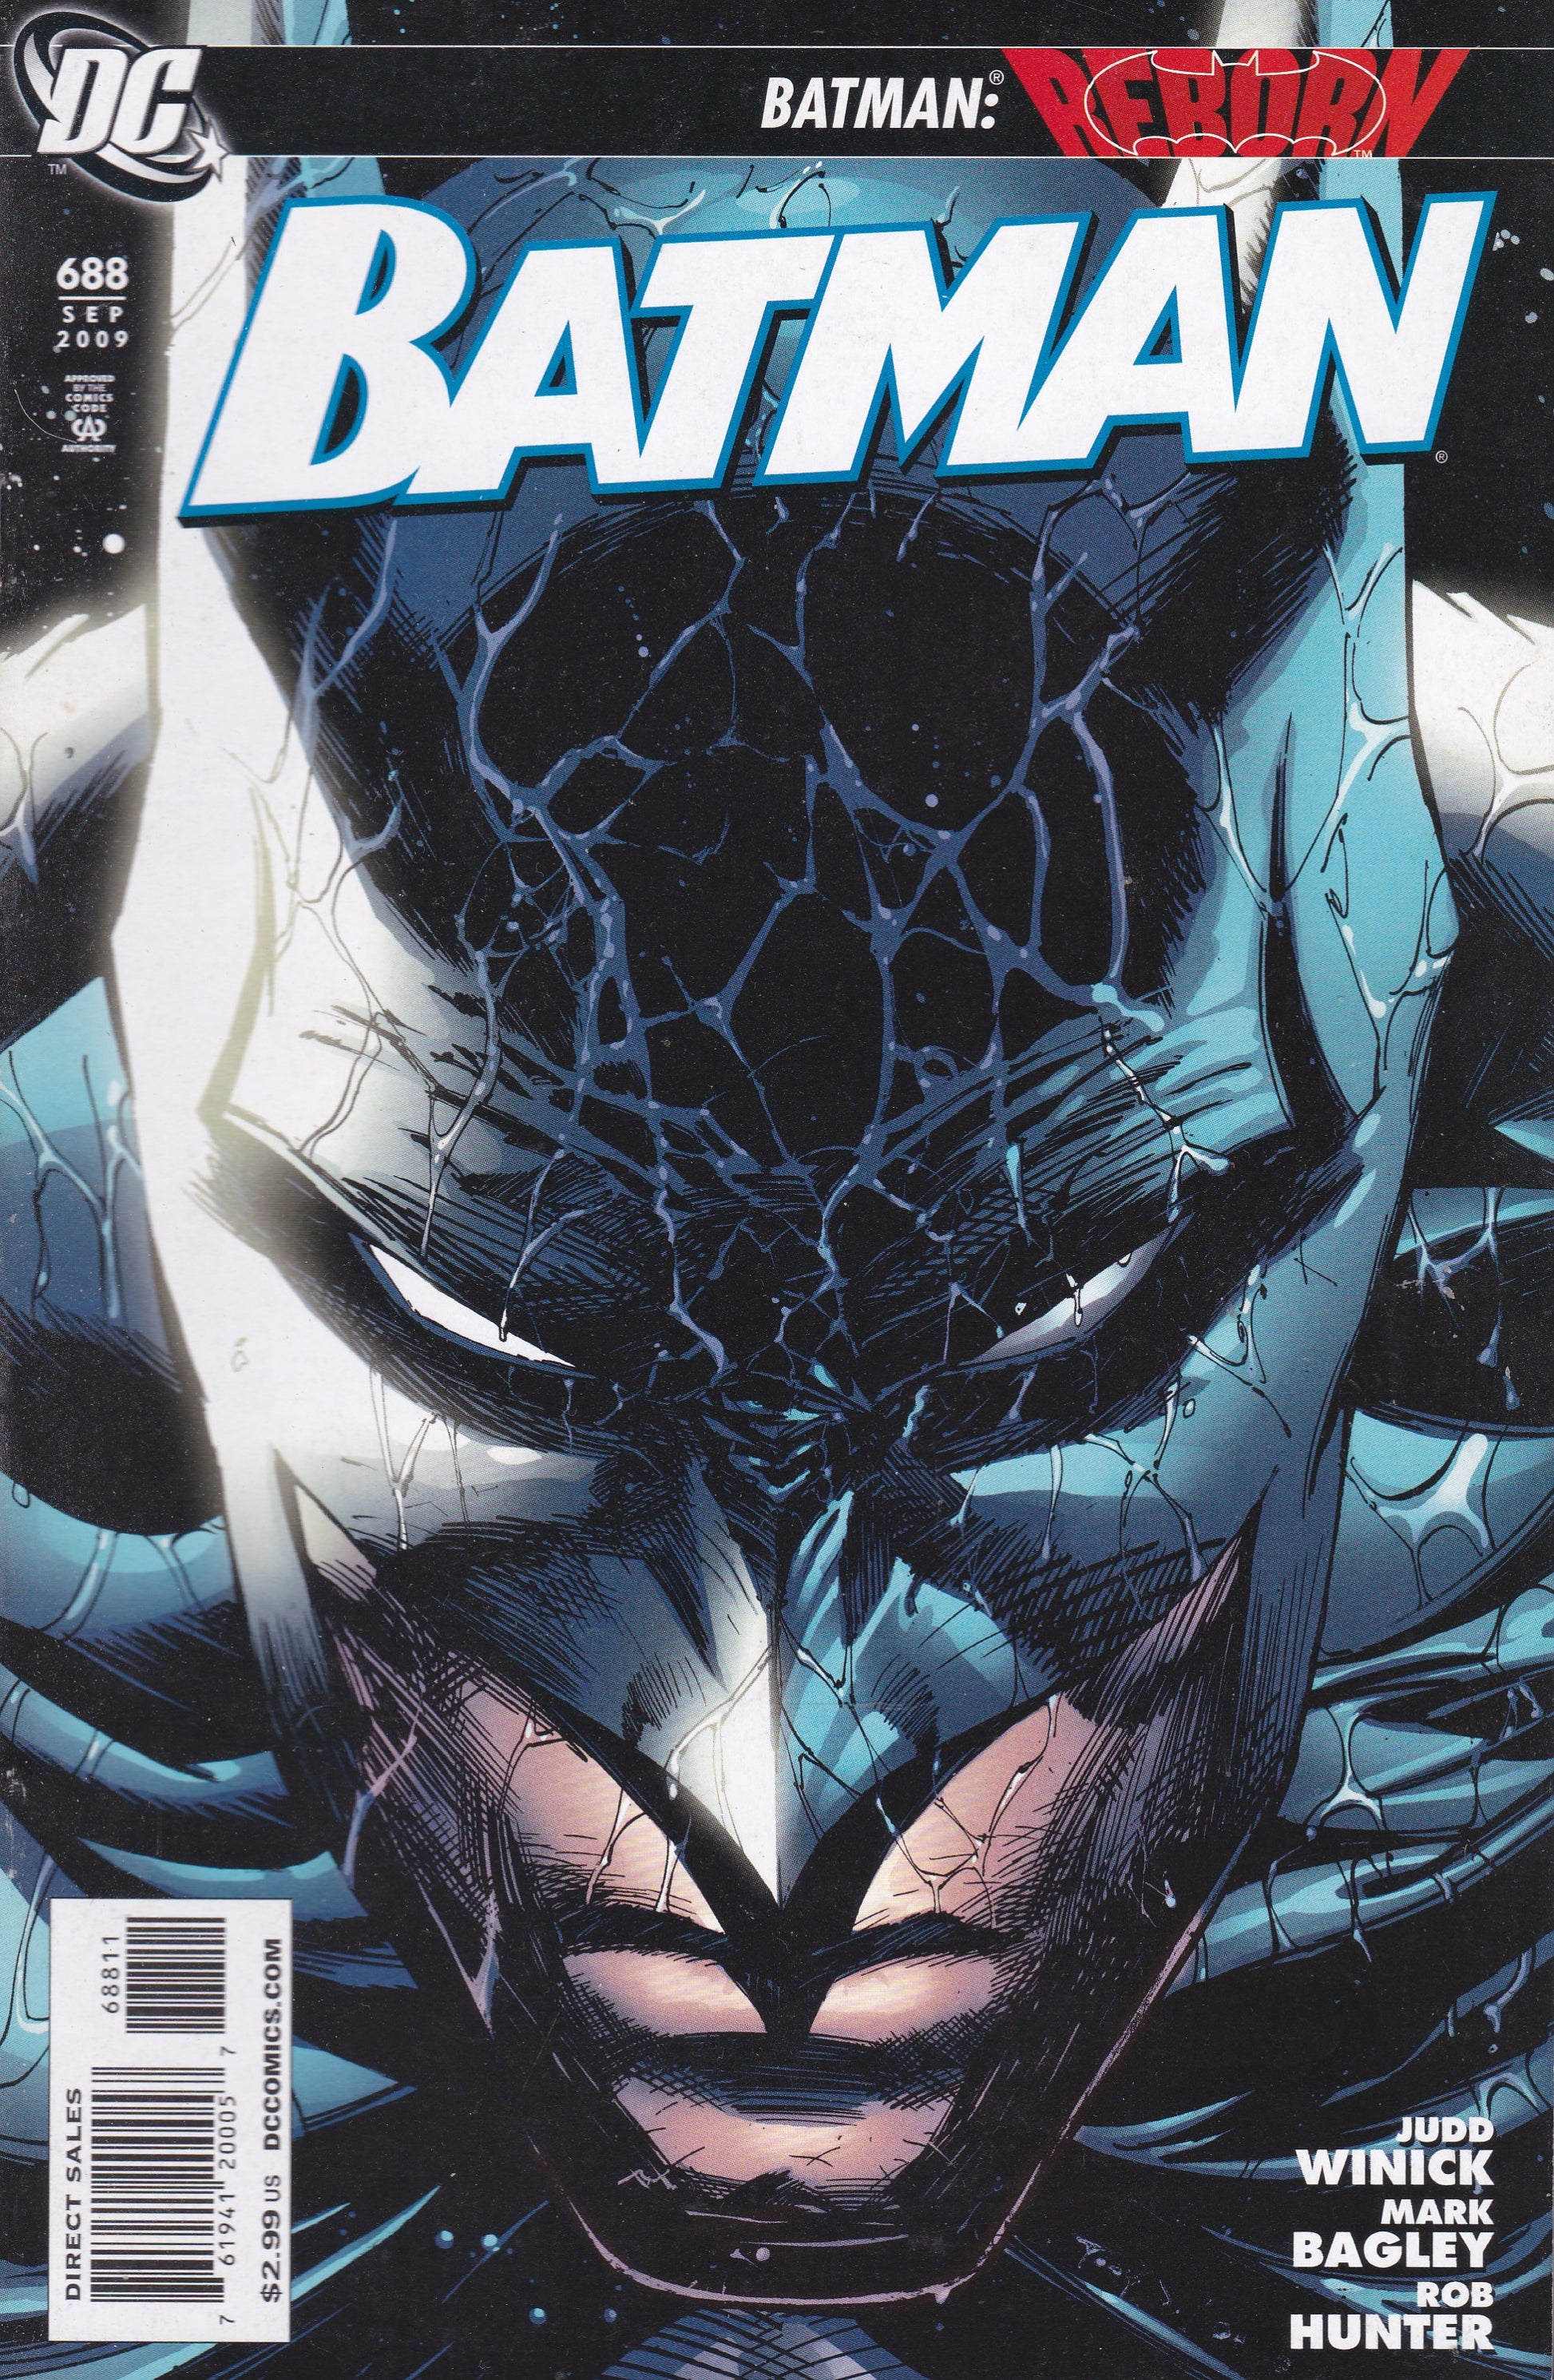 Batman # 688 DC Comics Vol. 1 – 